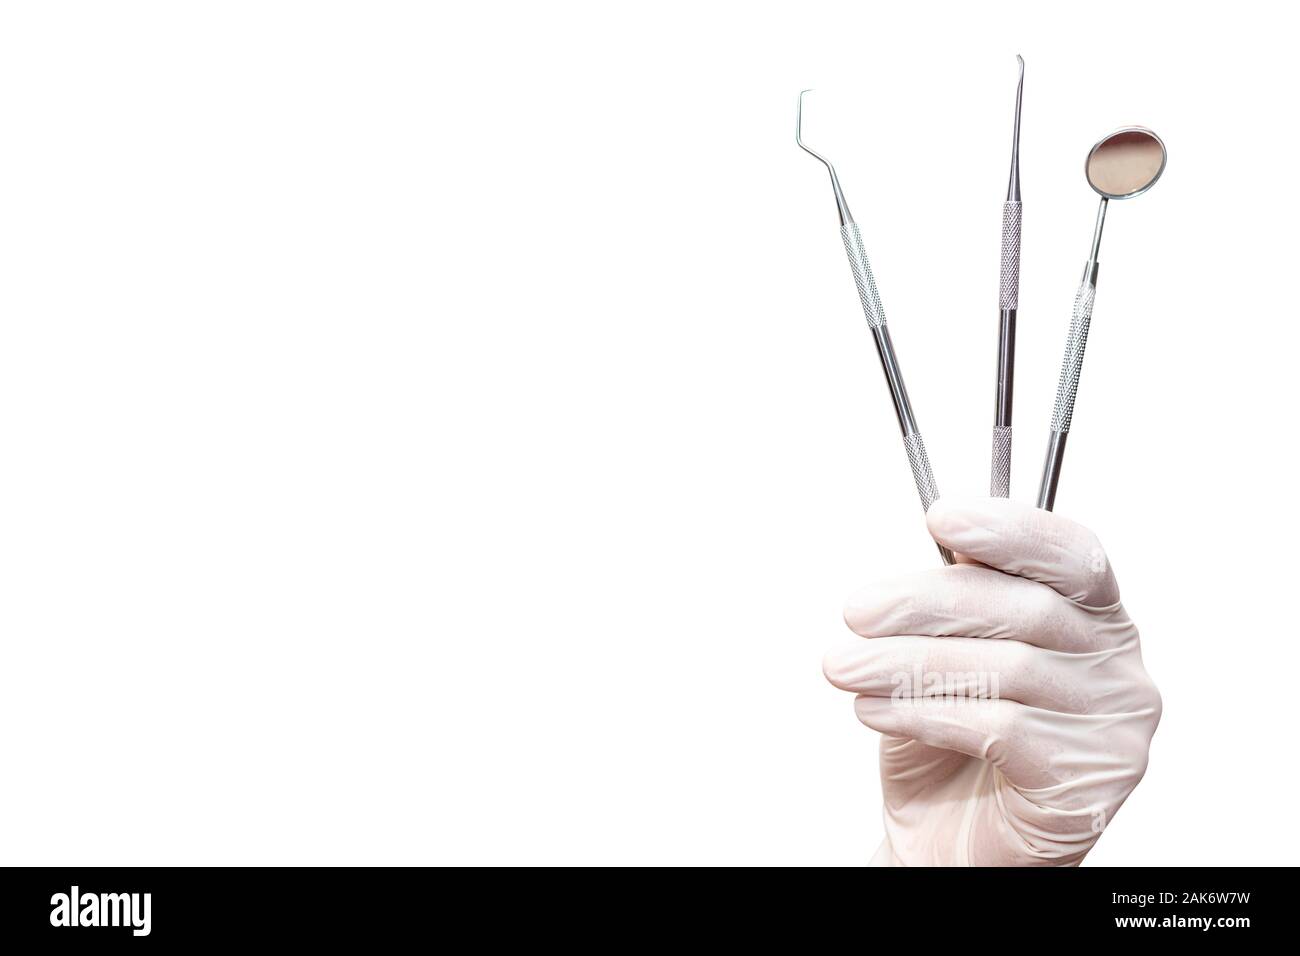 Basic dentist tools isolated on white Stock Photo by ©Uolis 54439037